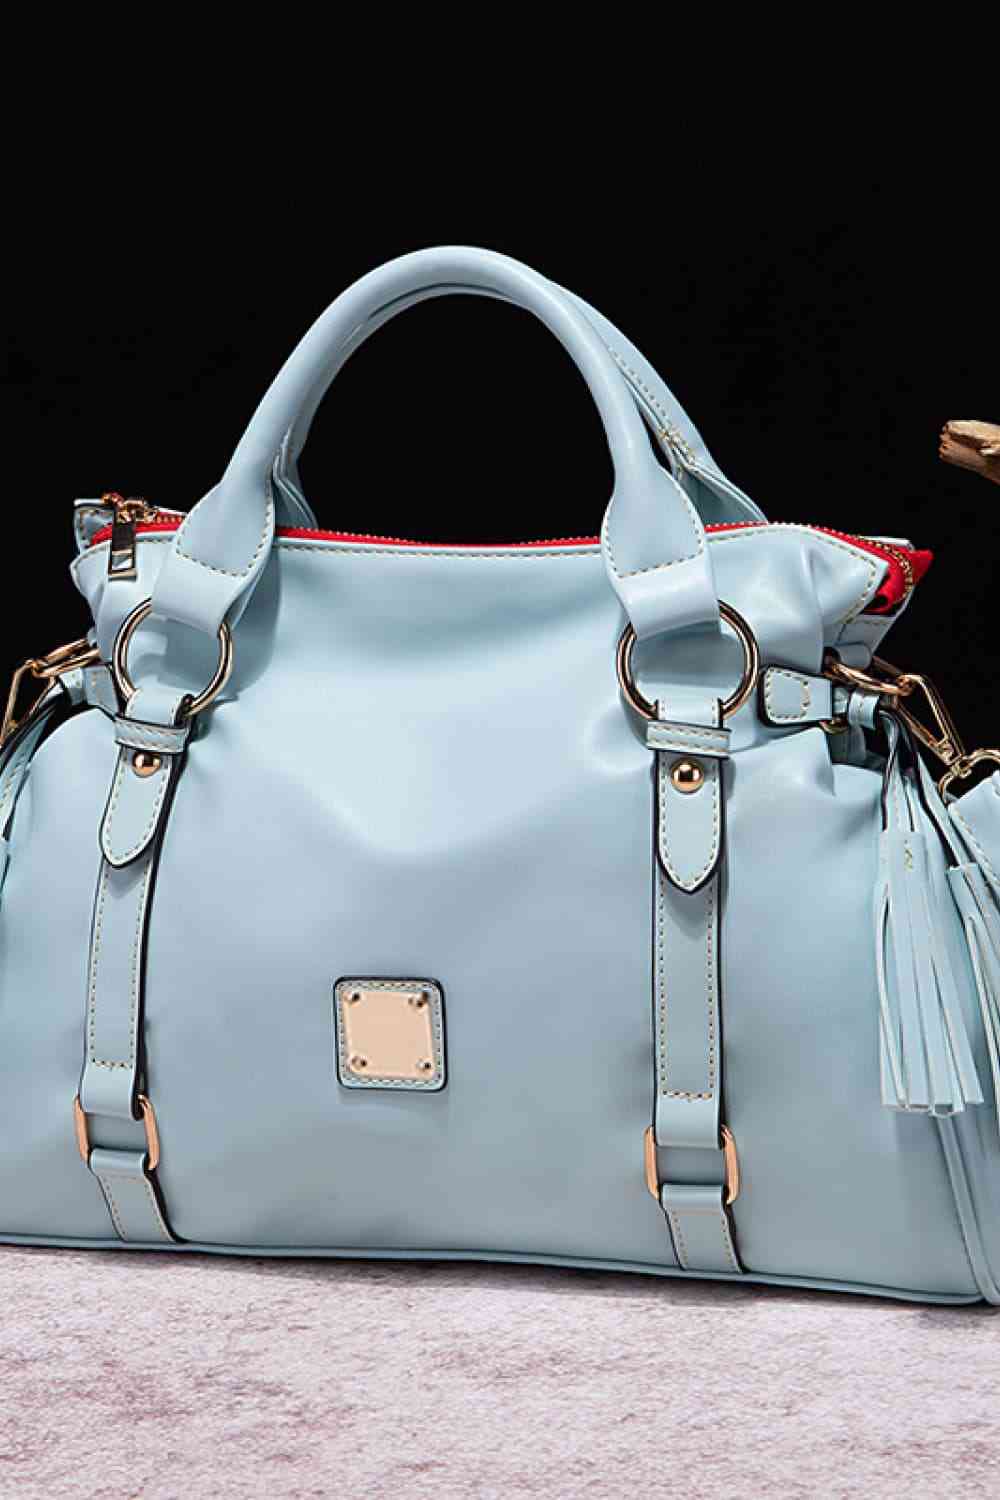 TEEK - PU Leather Handbag with Tassels BAG TEEK Trend Pastel  Blue  